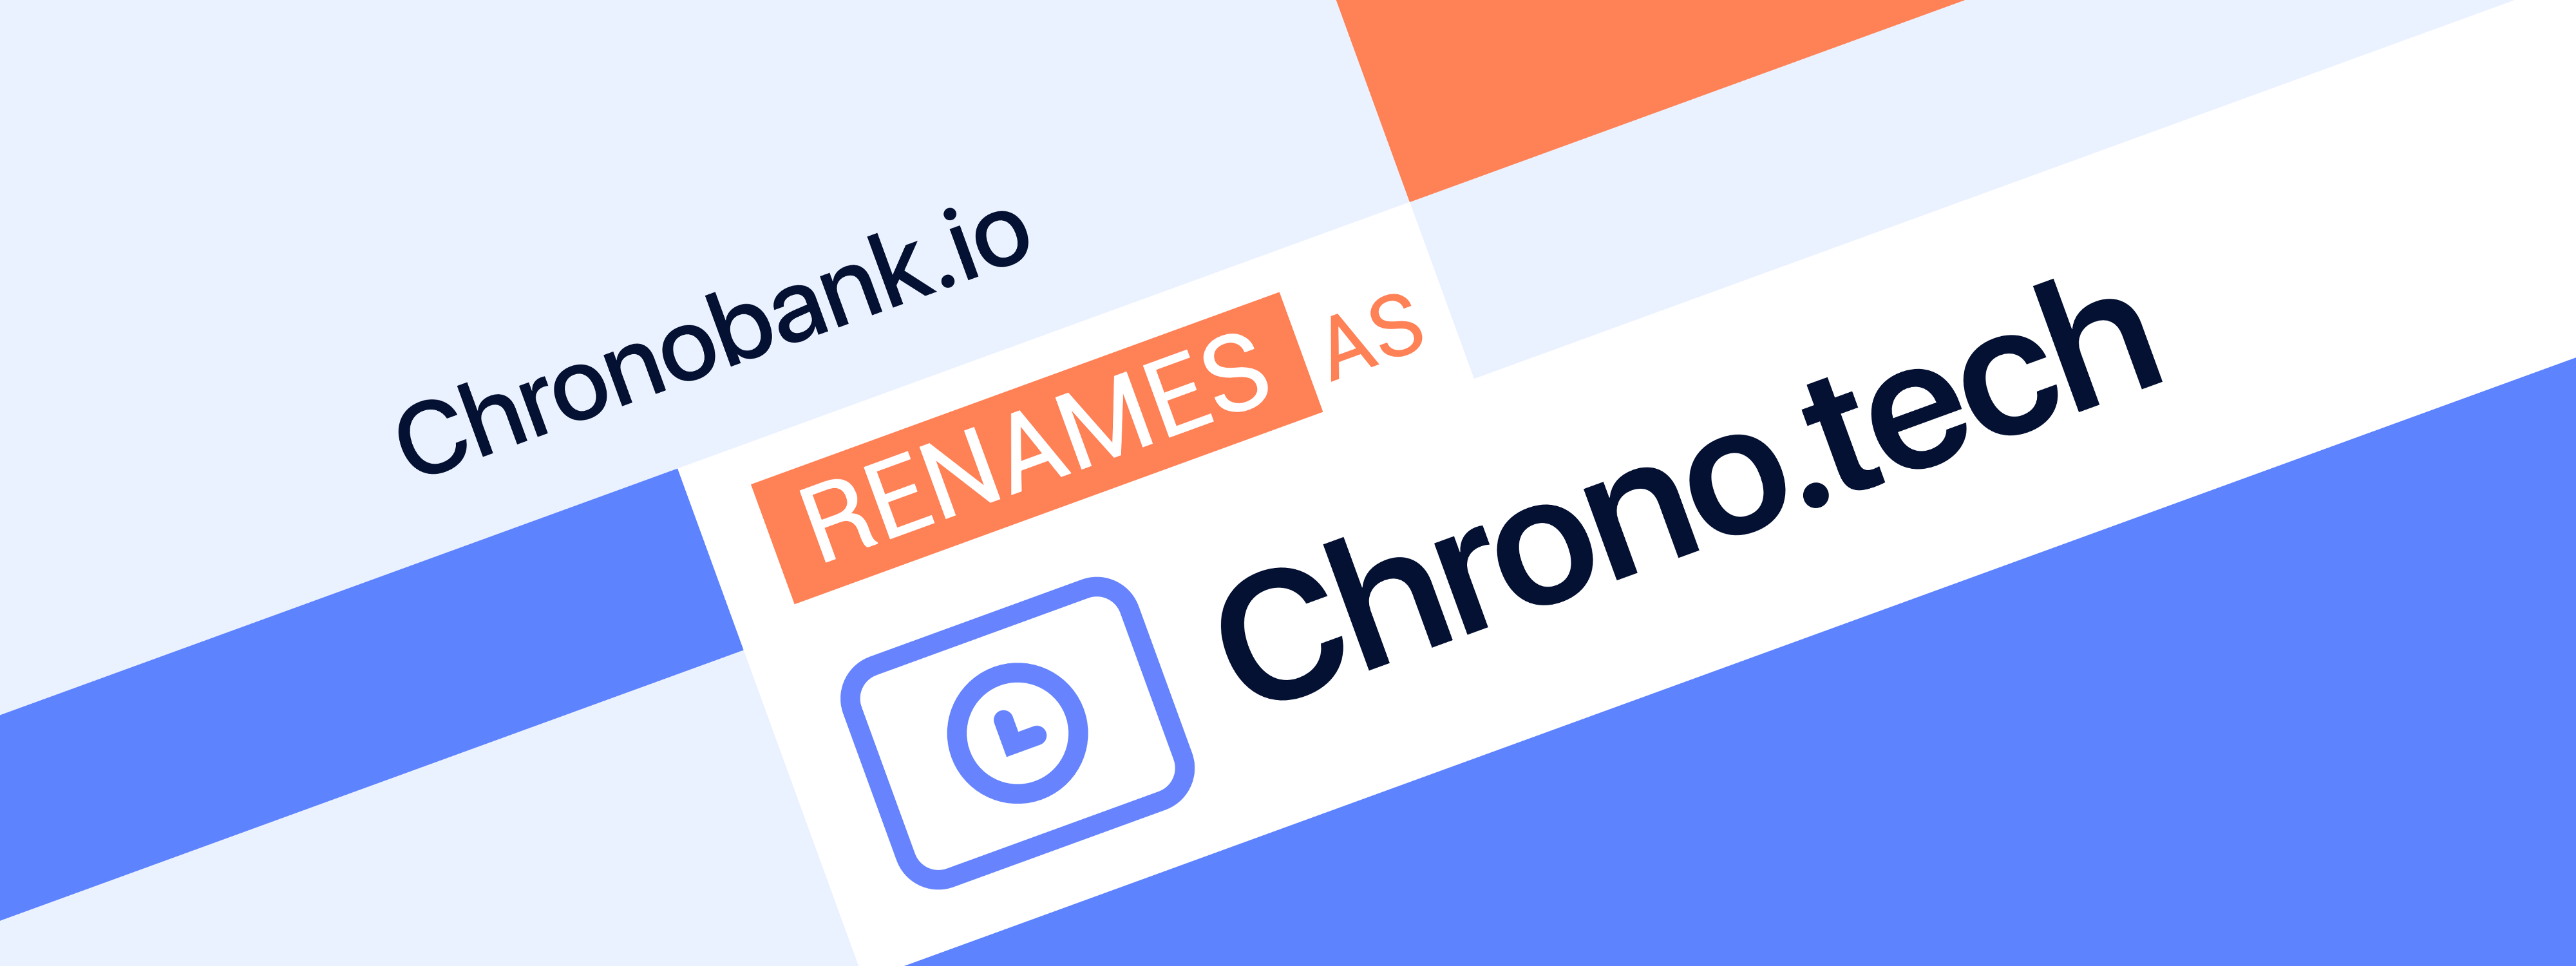 Chronobank renames as Chrono.tech